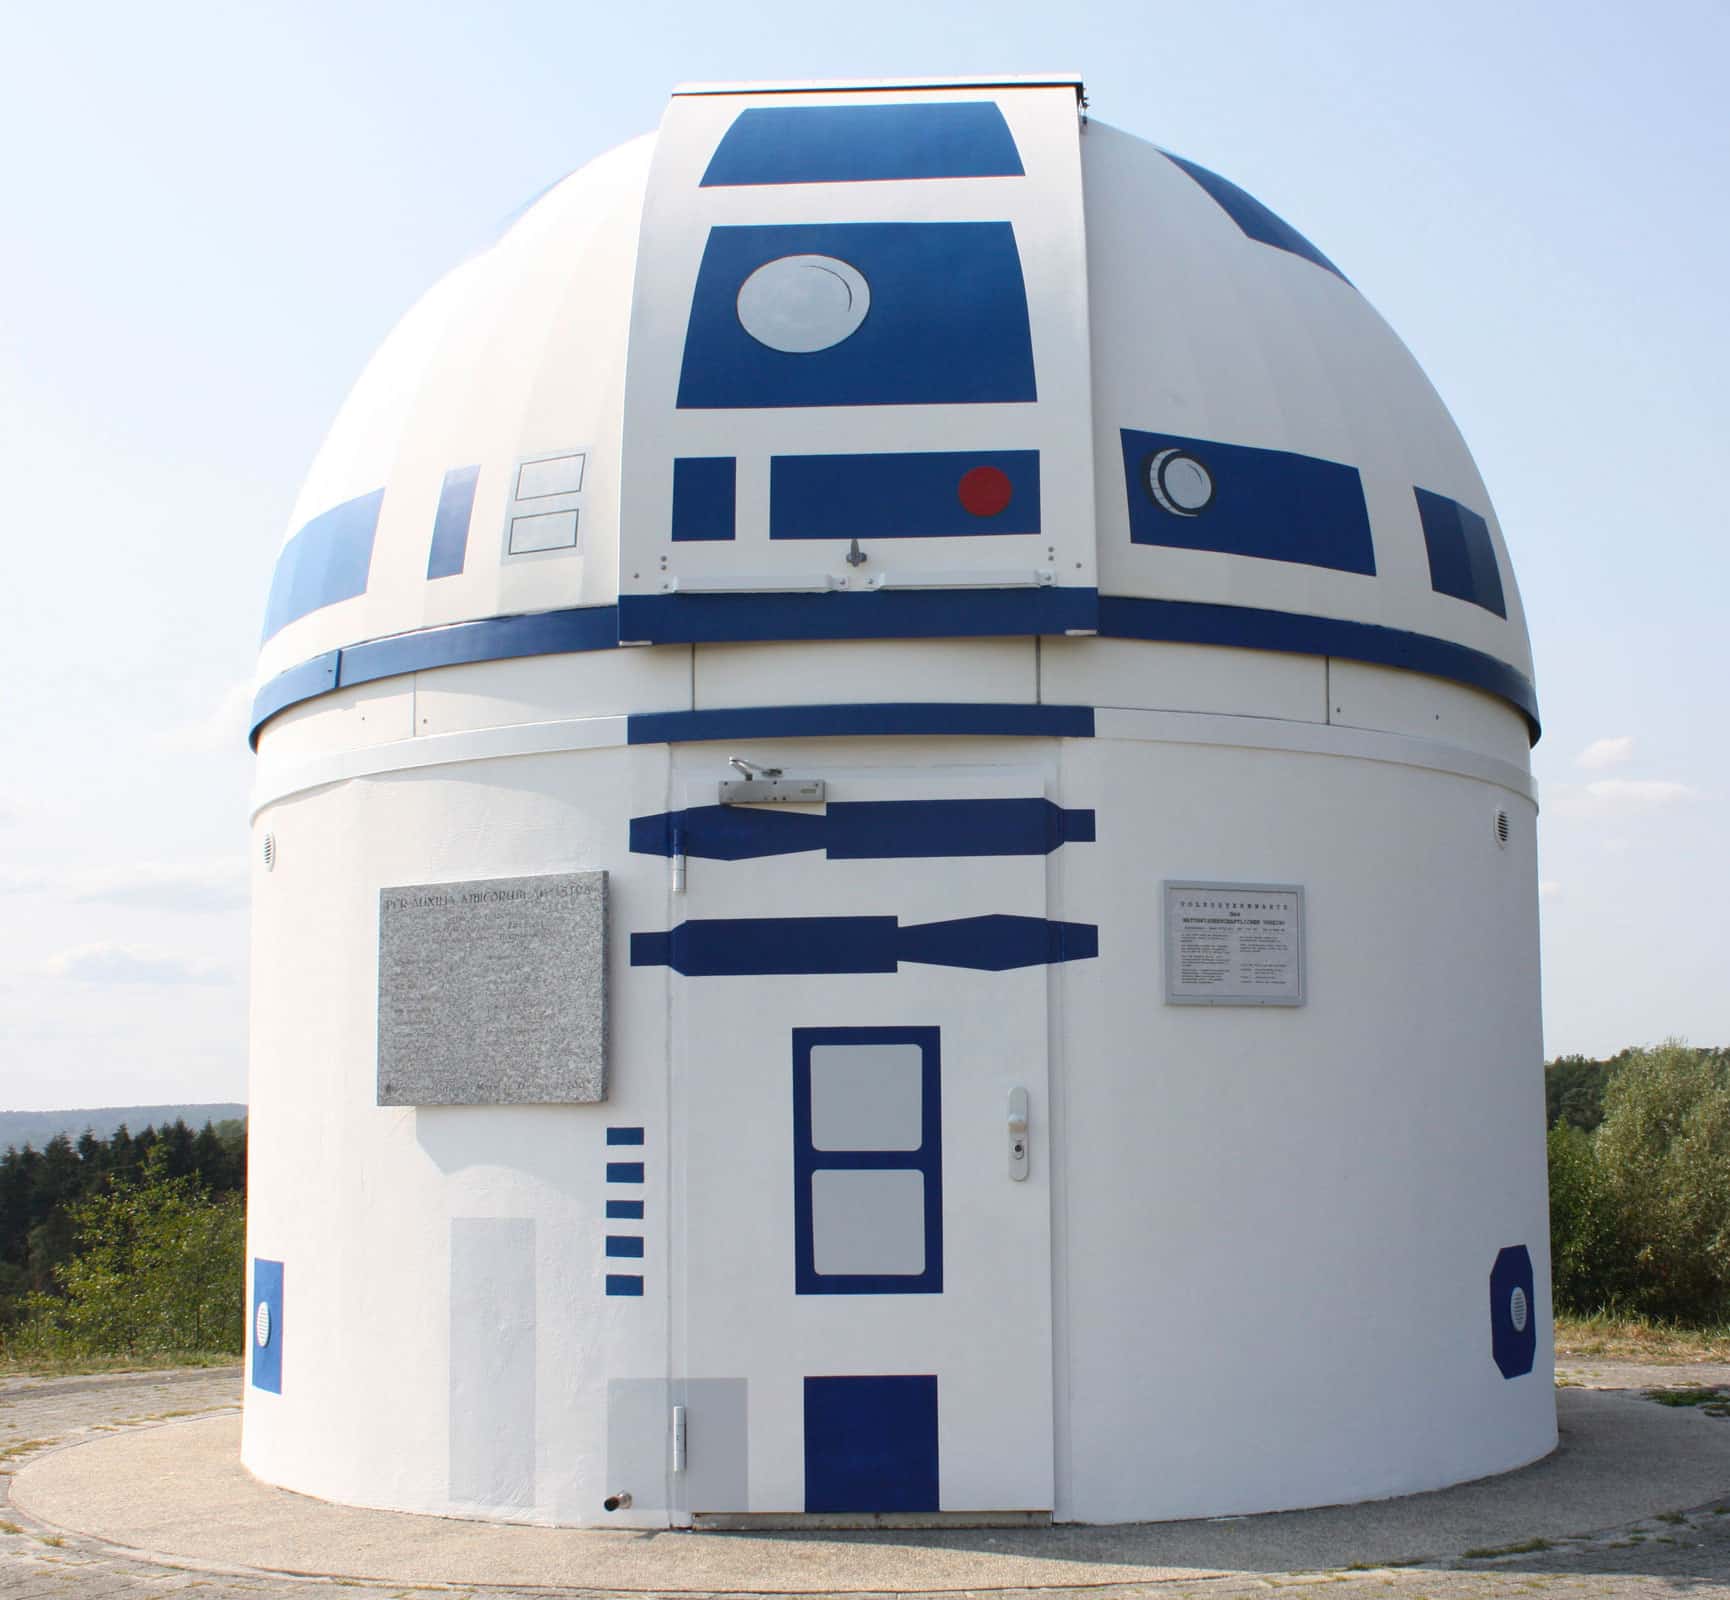 entrada de observatorio pintado de personaje de star wars r2d2 street art